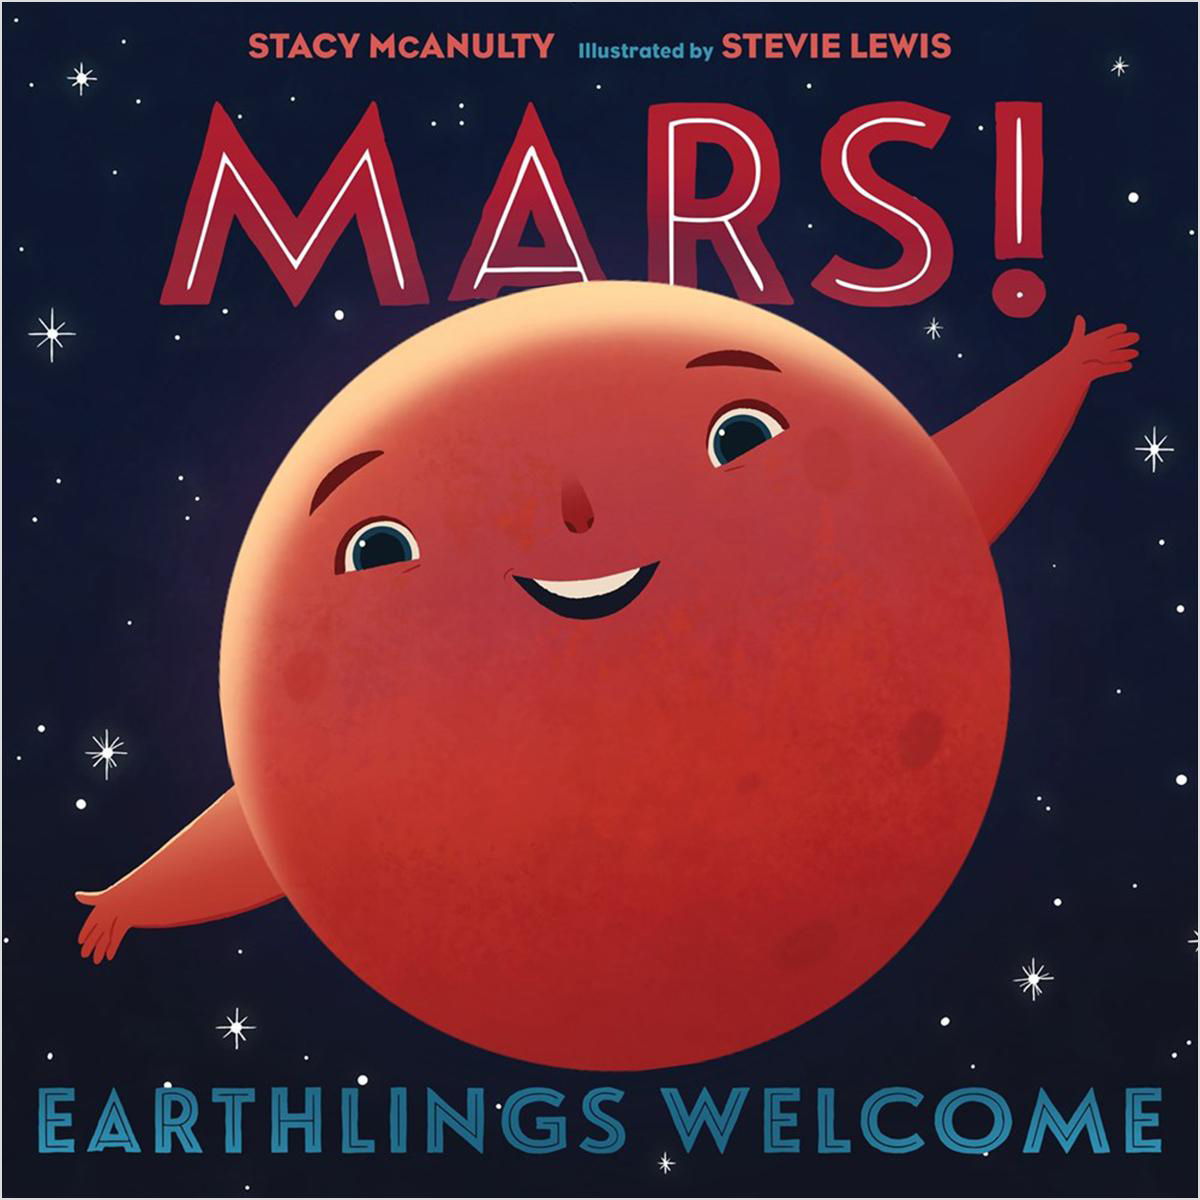  Mars! Earthlings Welcome 